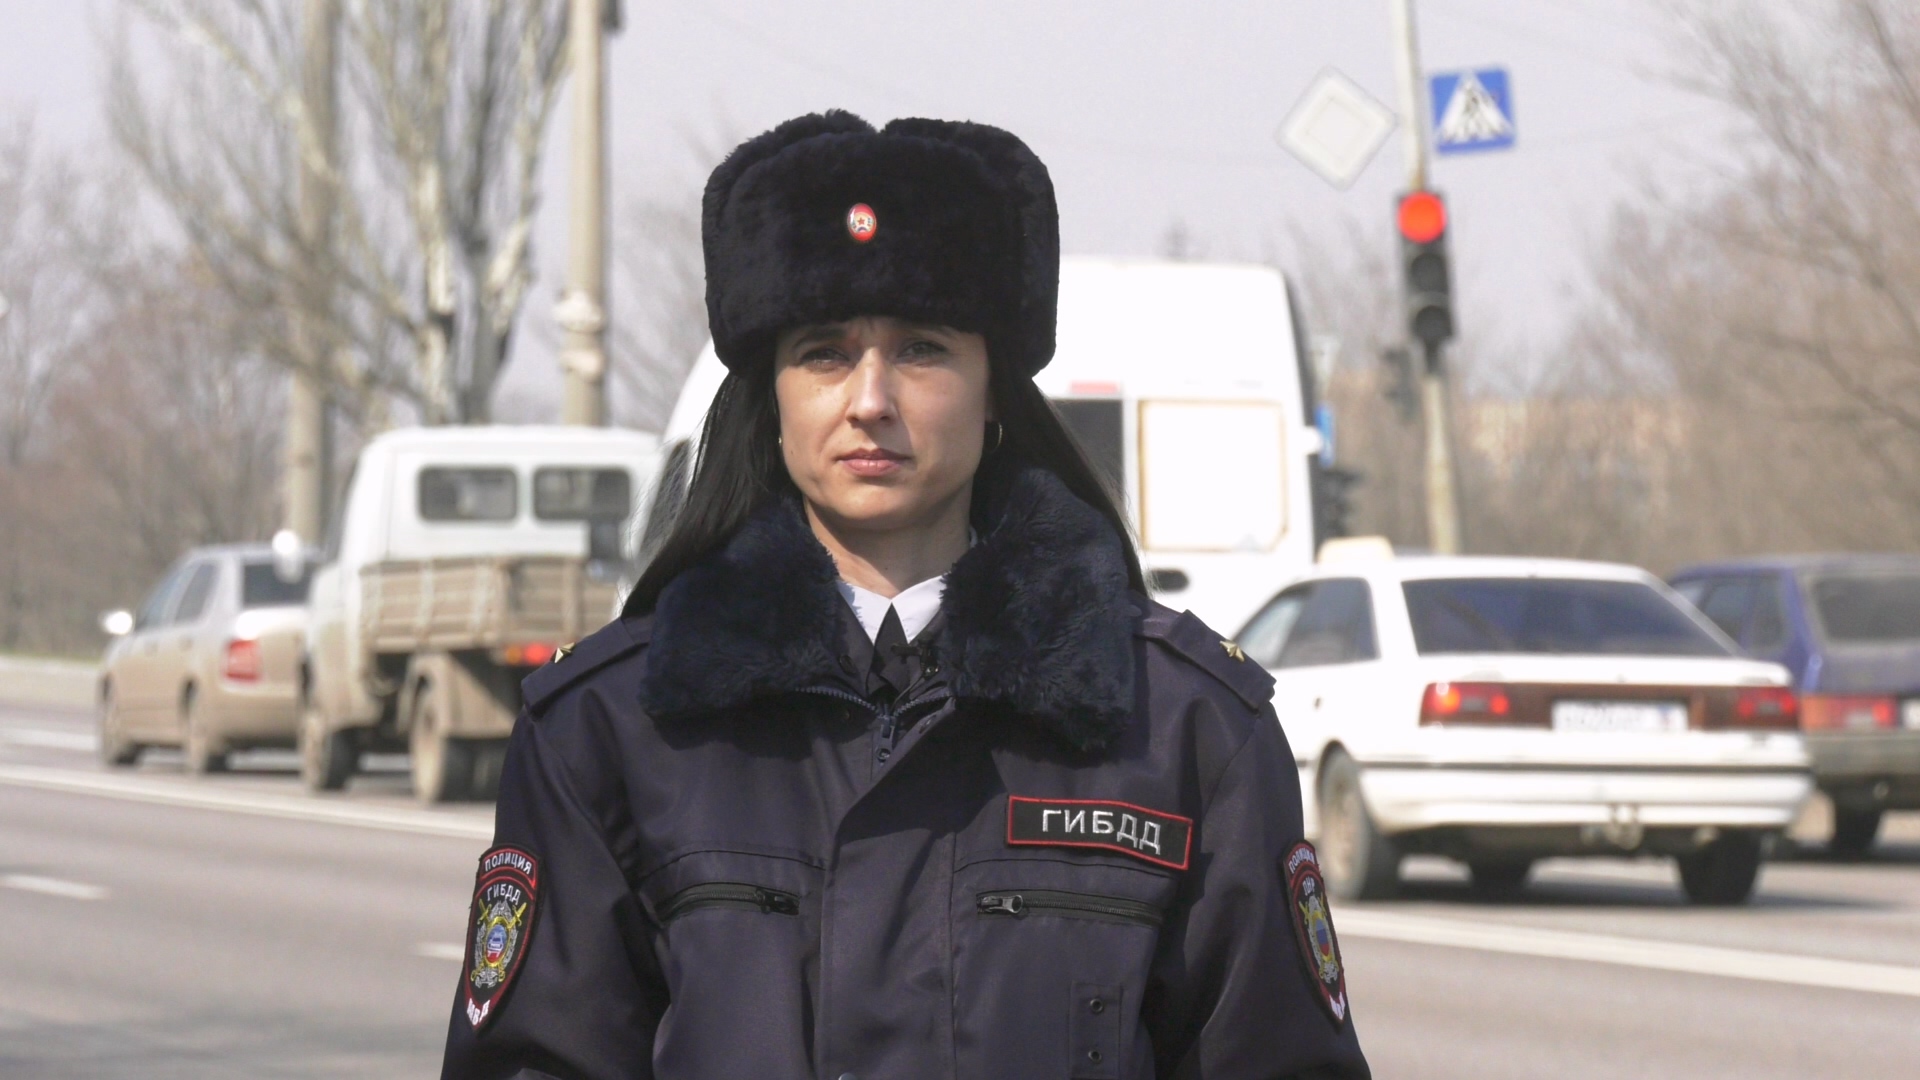 УГИБДД МВД по Луганской Народной Республике напоминает участникам дорожного движения о необходимости